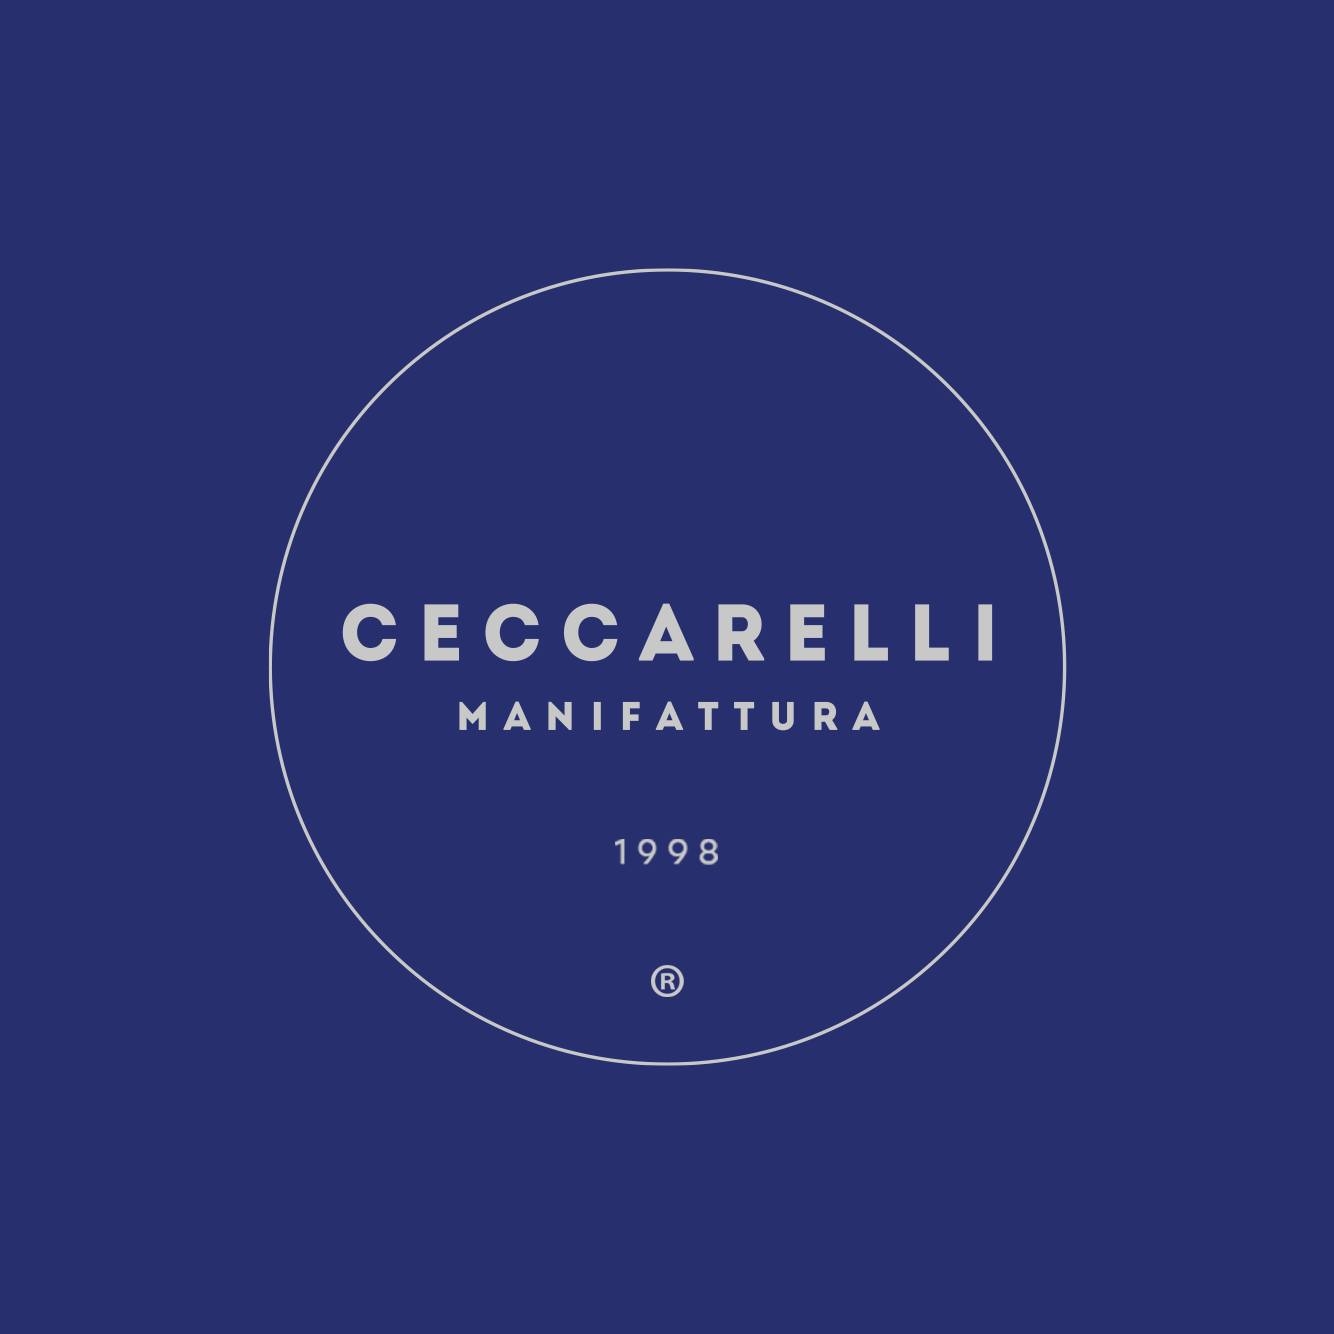 Manifattura Ceccarelli